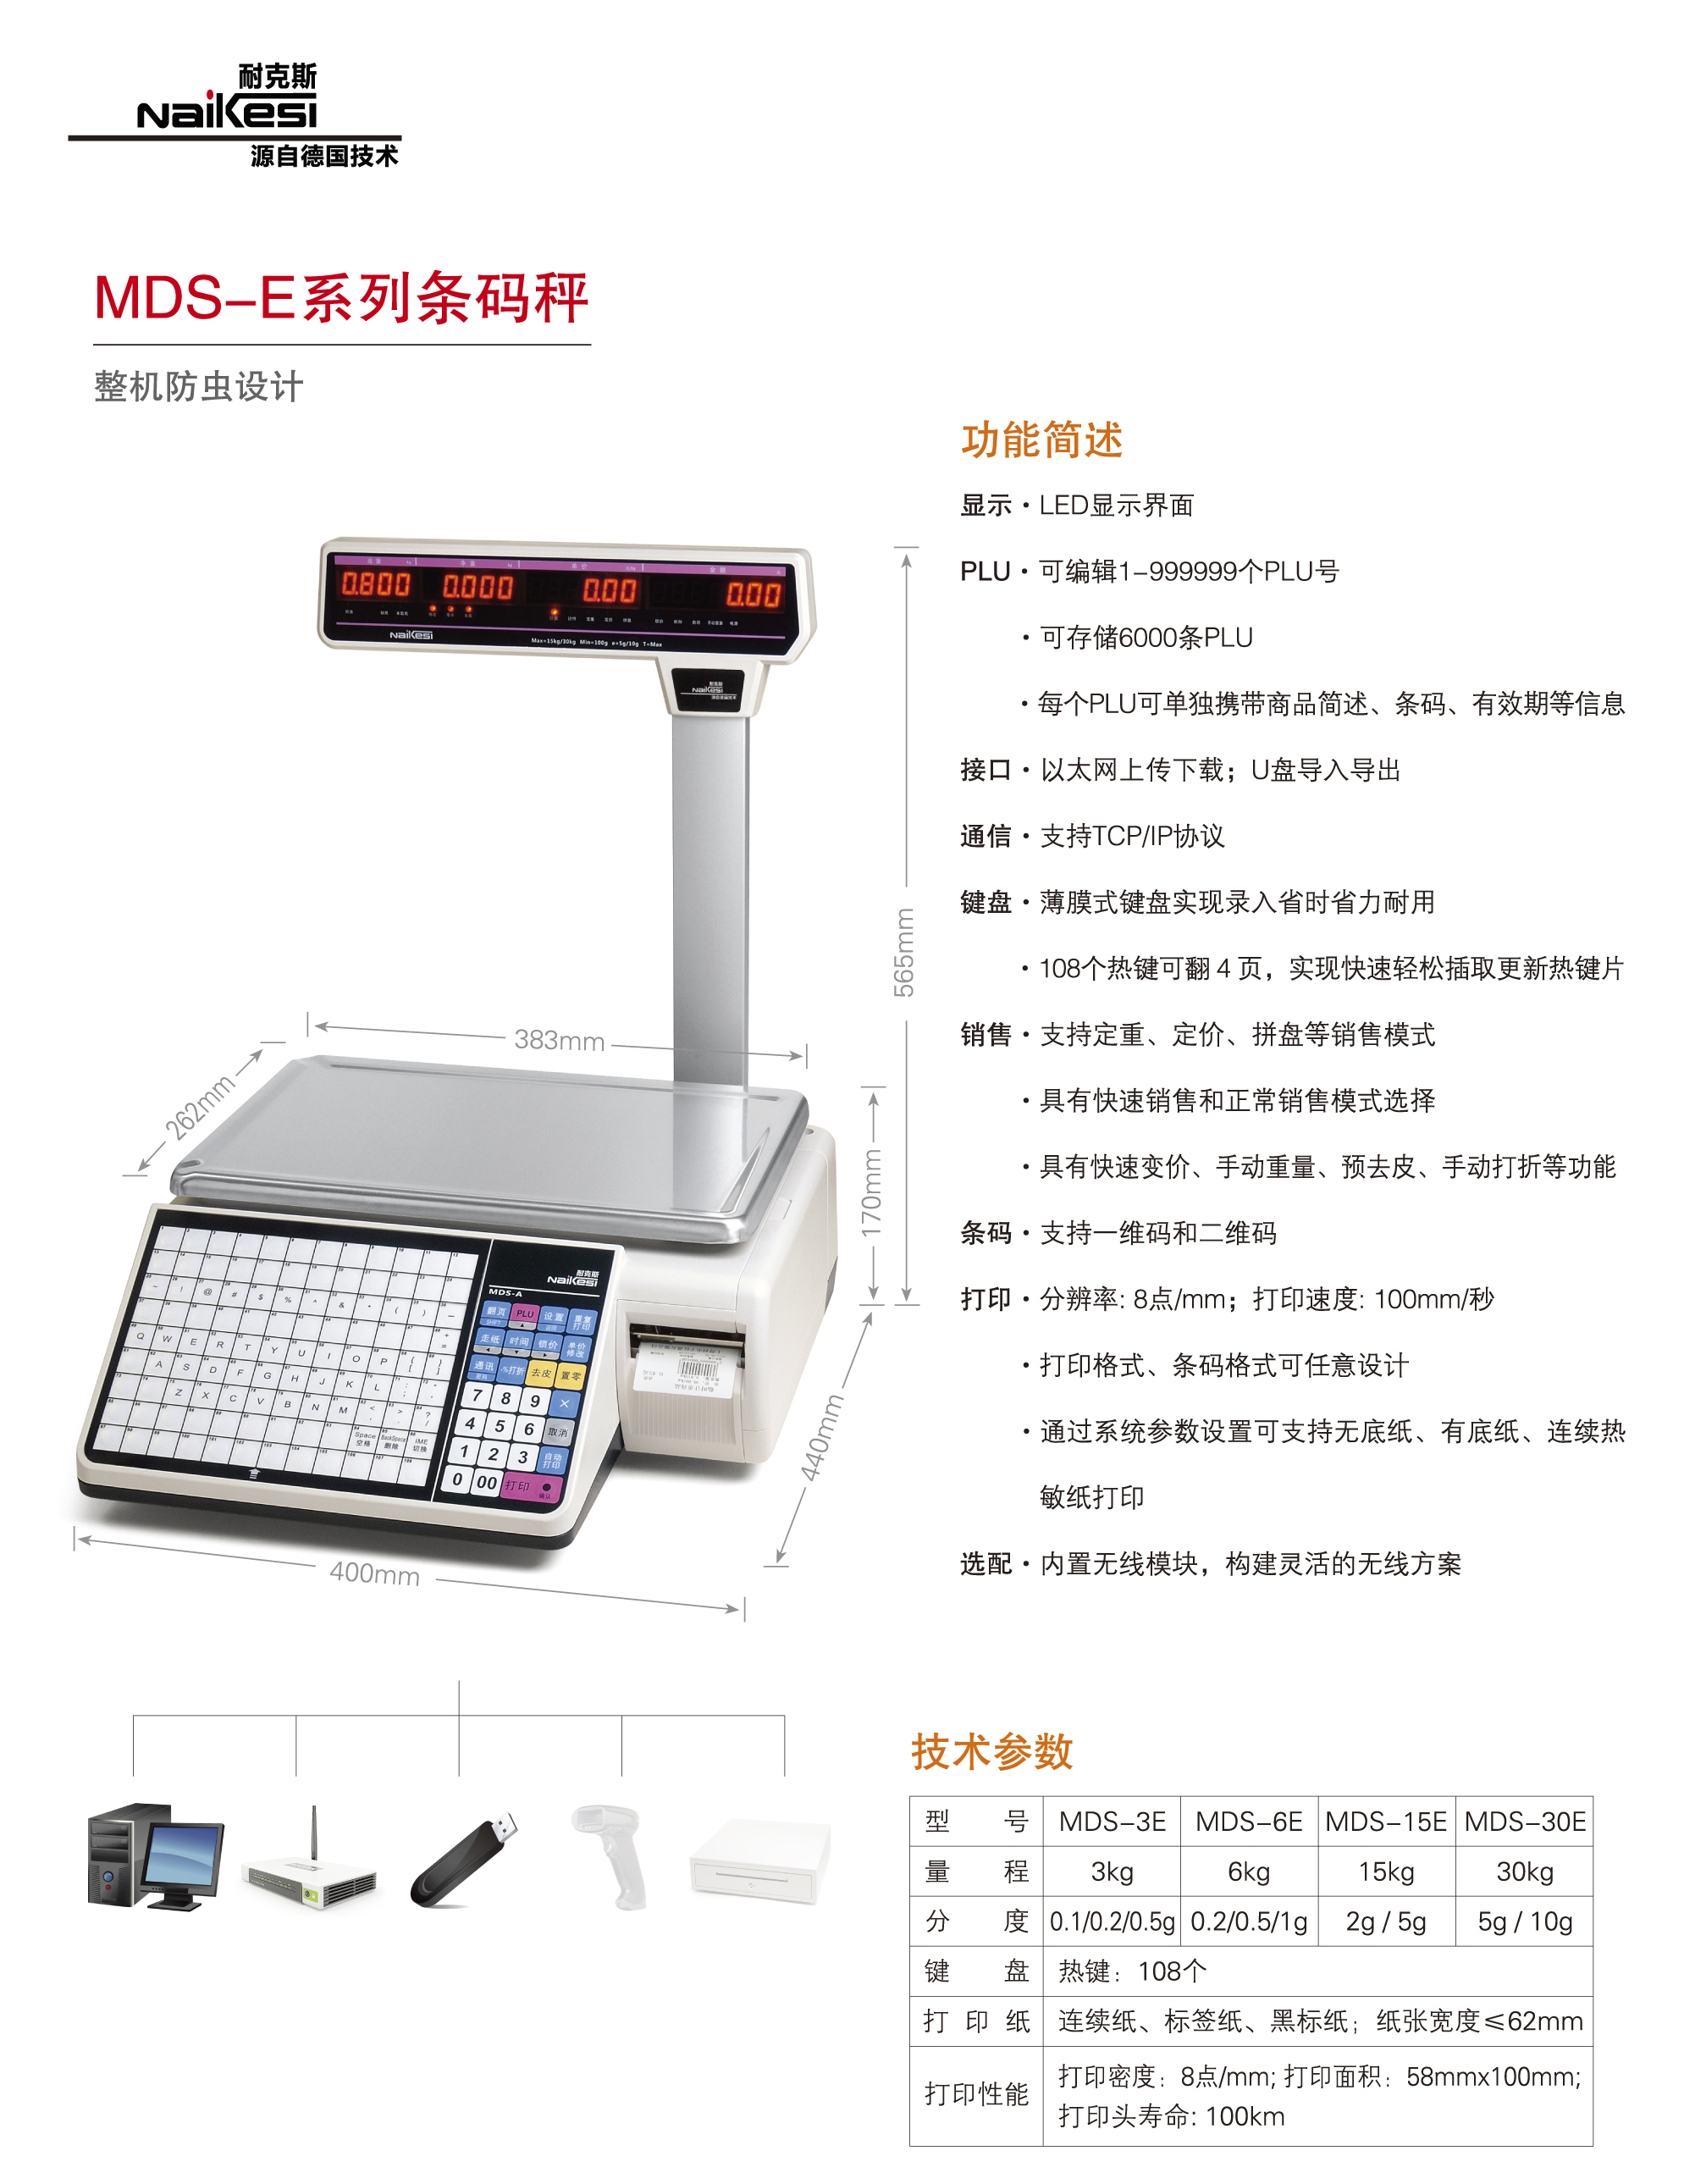 中文MDS-E.jpg